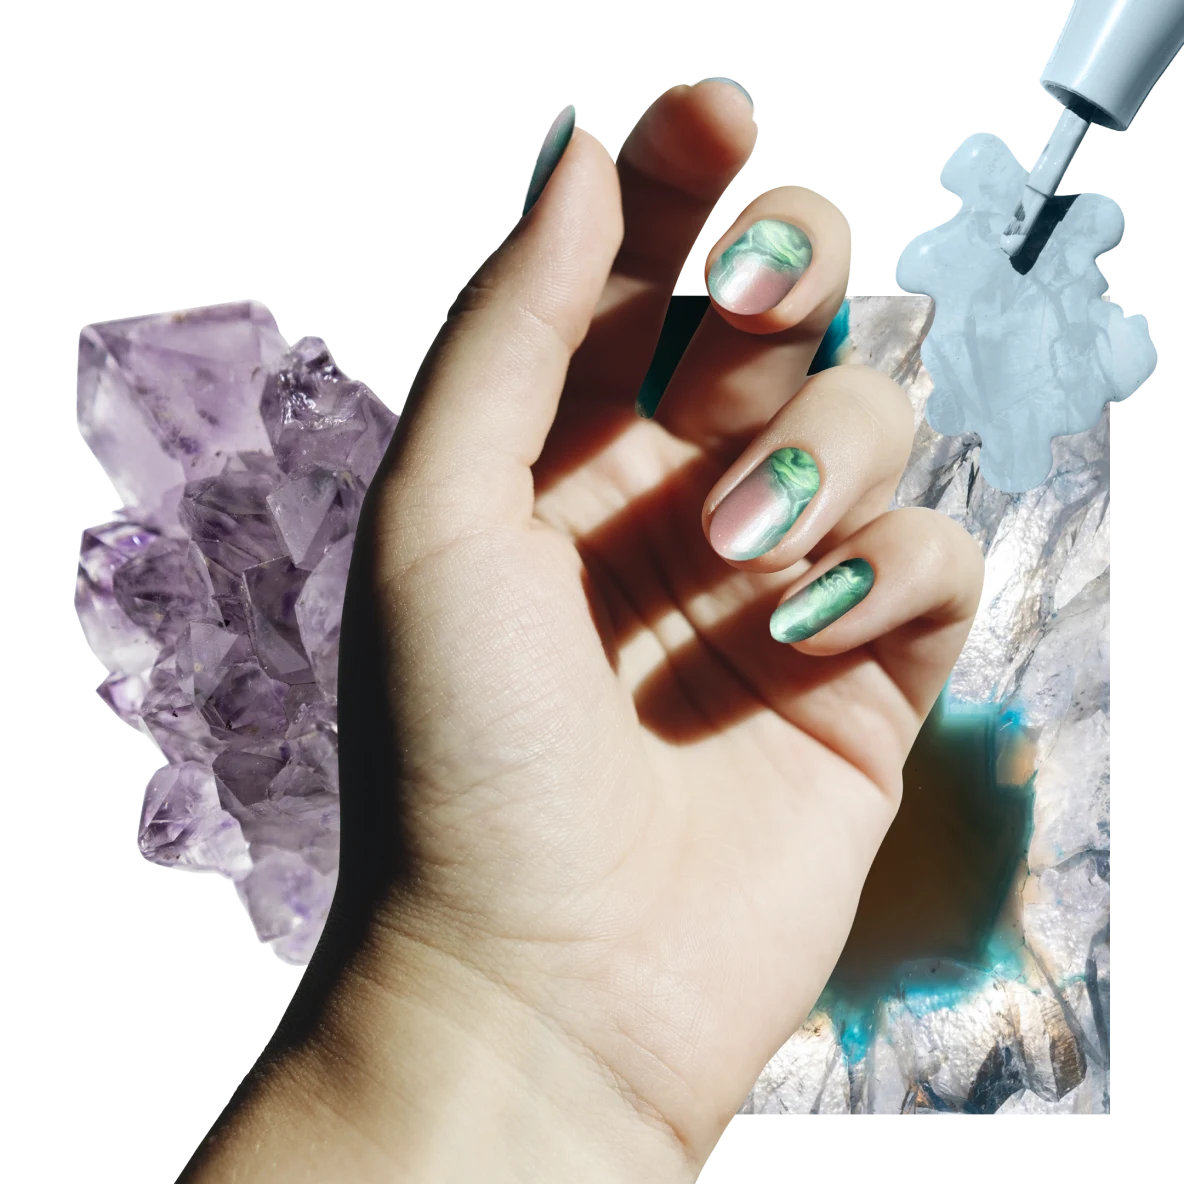 Una mano bianca sopra dei cristalli viola, trasparenti e azzurri. A destra, dello smalto per unghie azzurro.